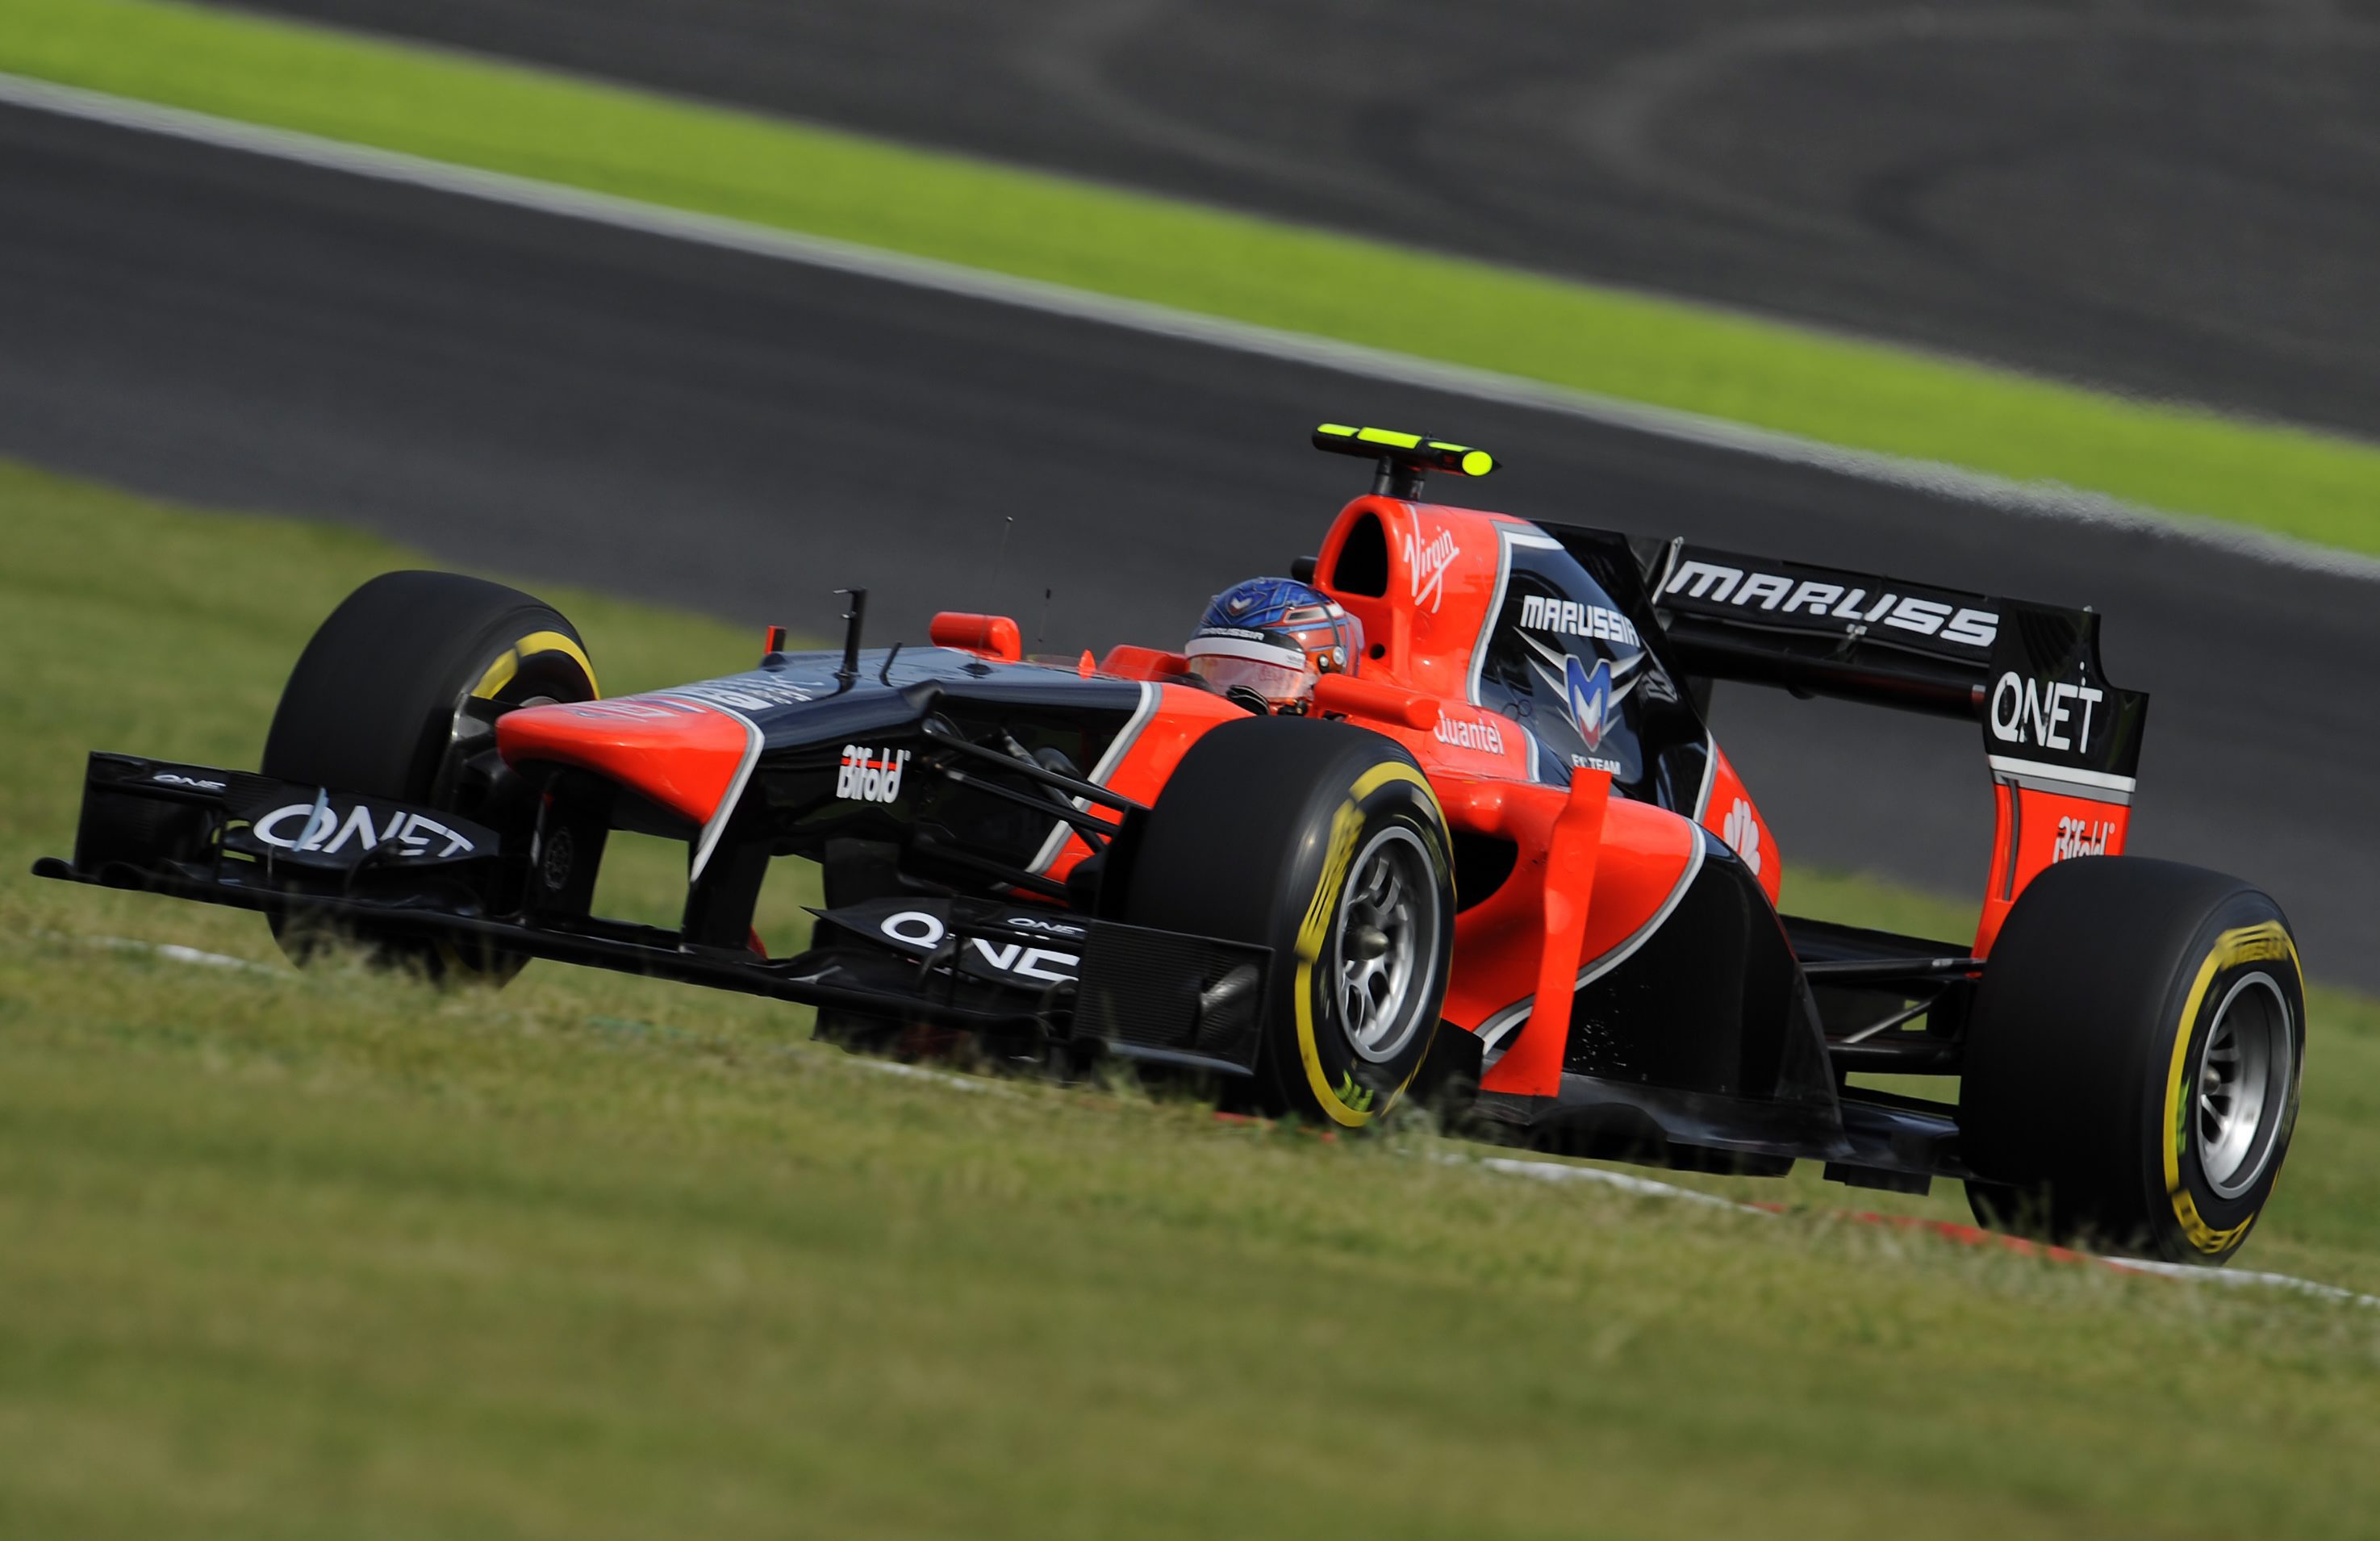 ”Маруся” може да се състезава през новия сезон във Формула 1